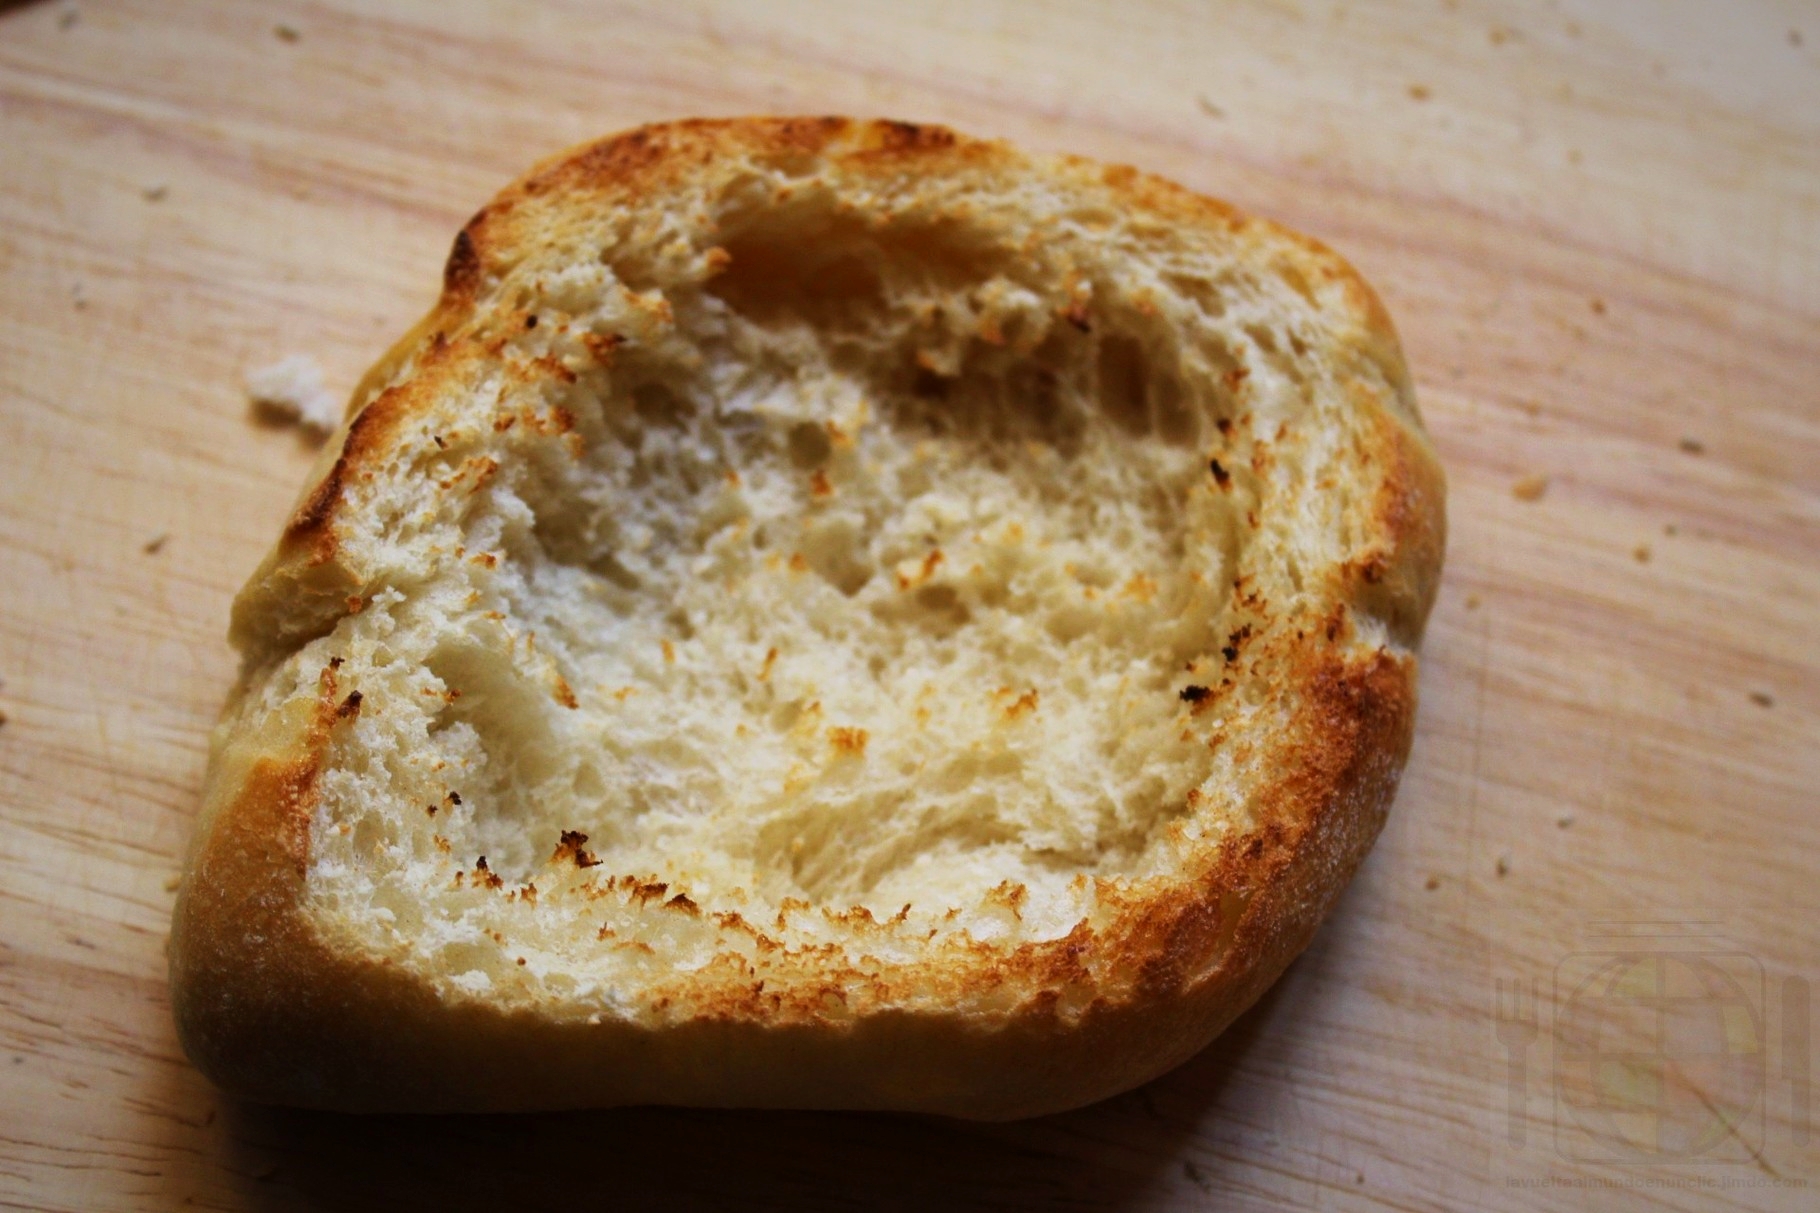 Pan tostado al que previamente le habremos quitado parte de la miga